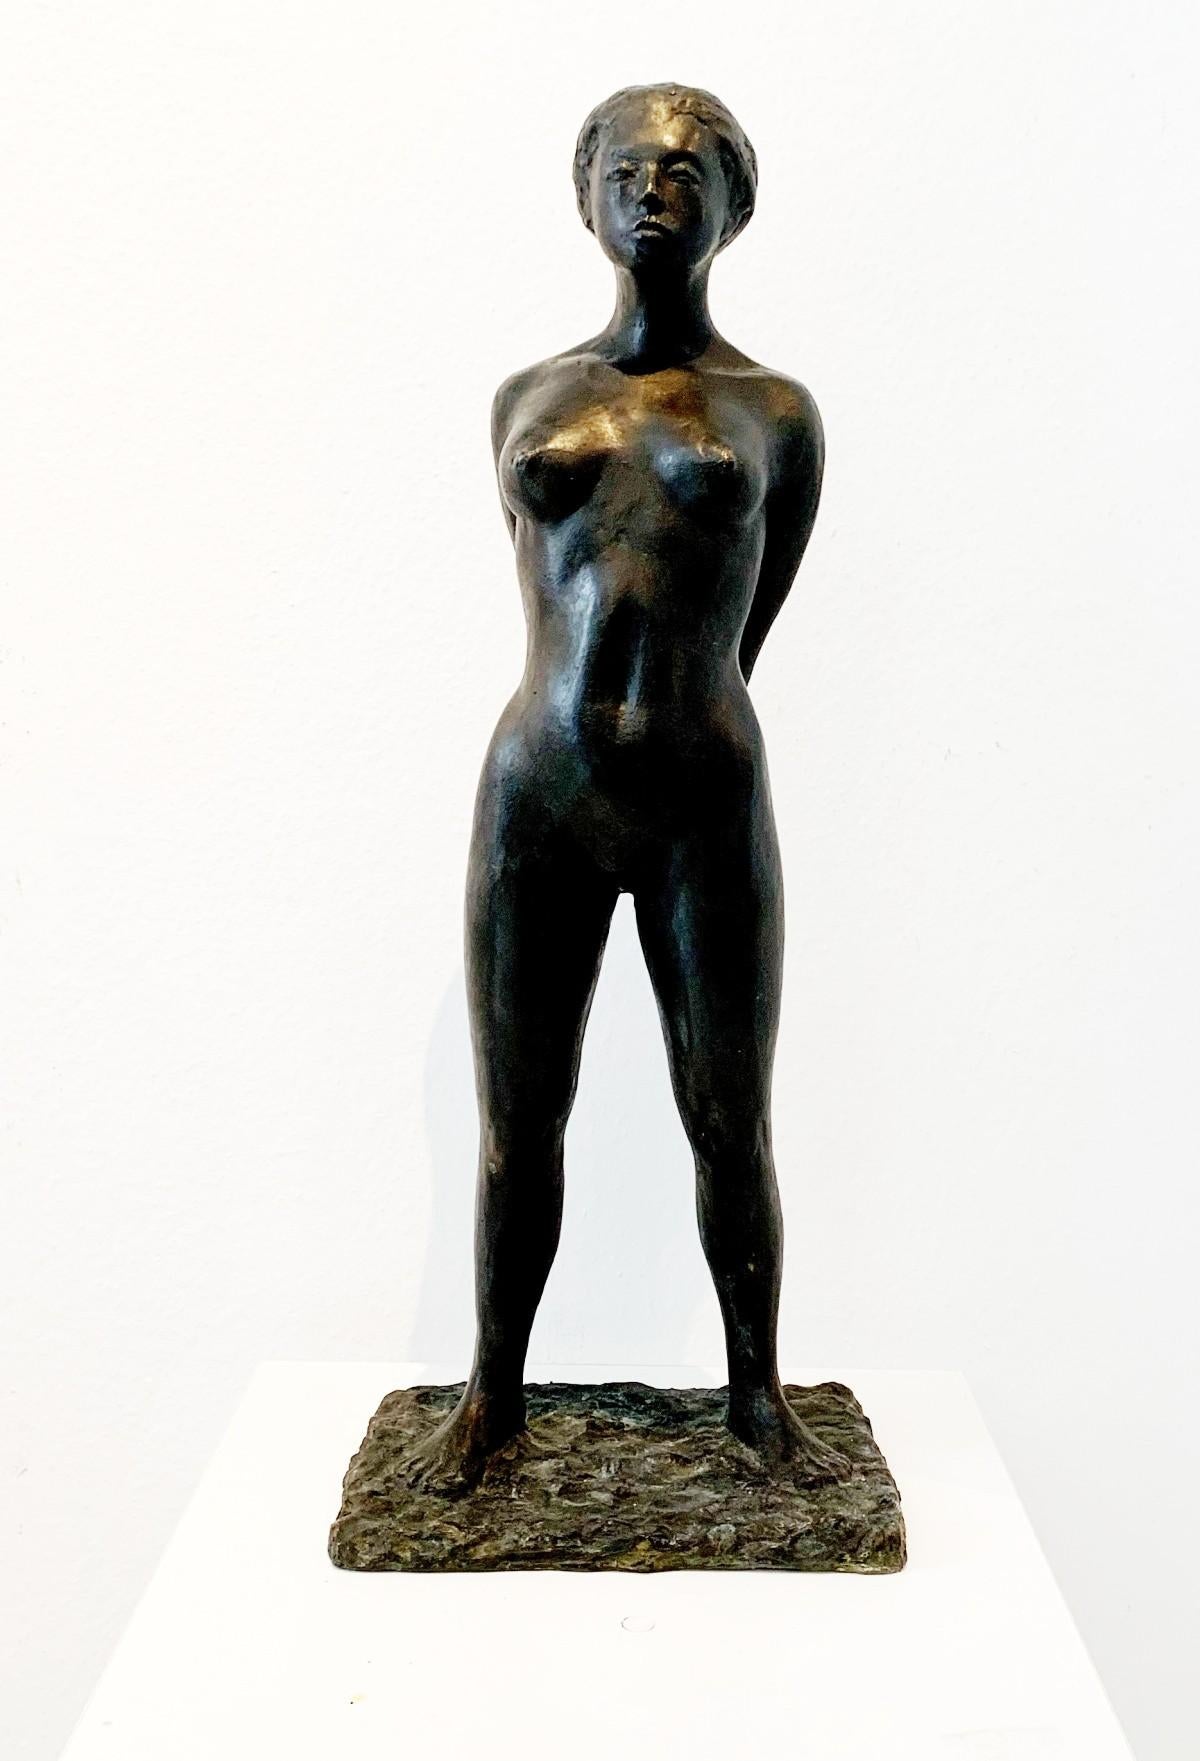 Ryszard Piotrowski Nude Sculpture – Frau – 21. Jahrhundert, zeitgenössische figurative Bronzeskulptur, weiblicher Akt